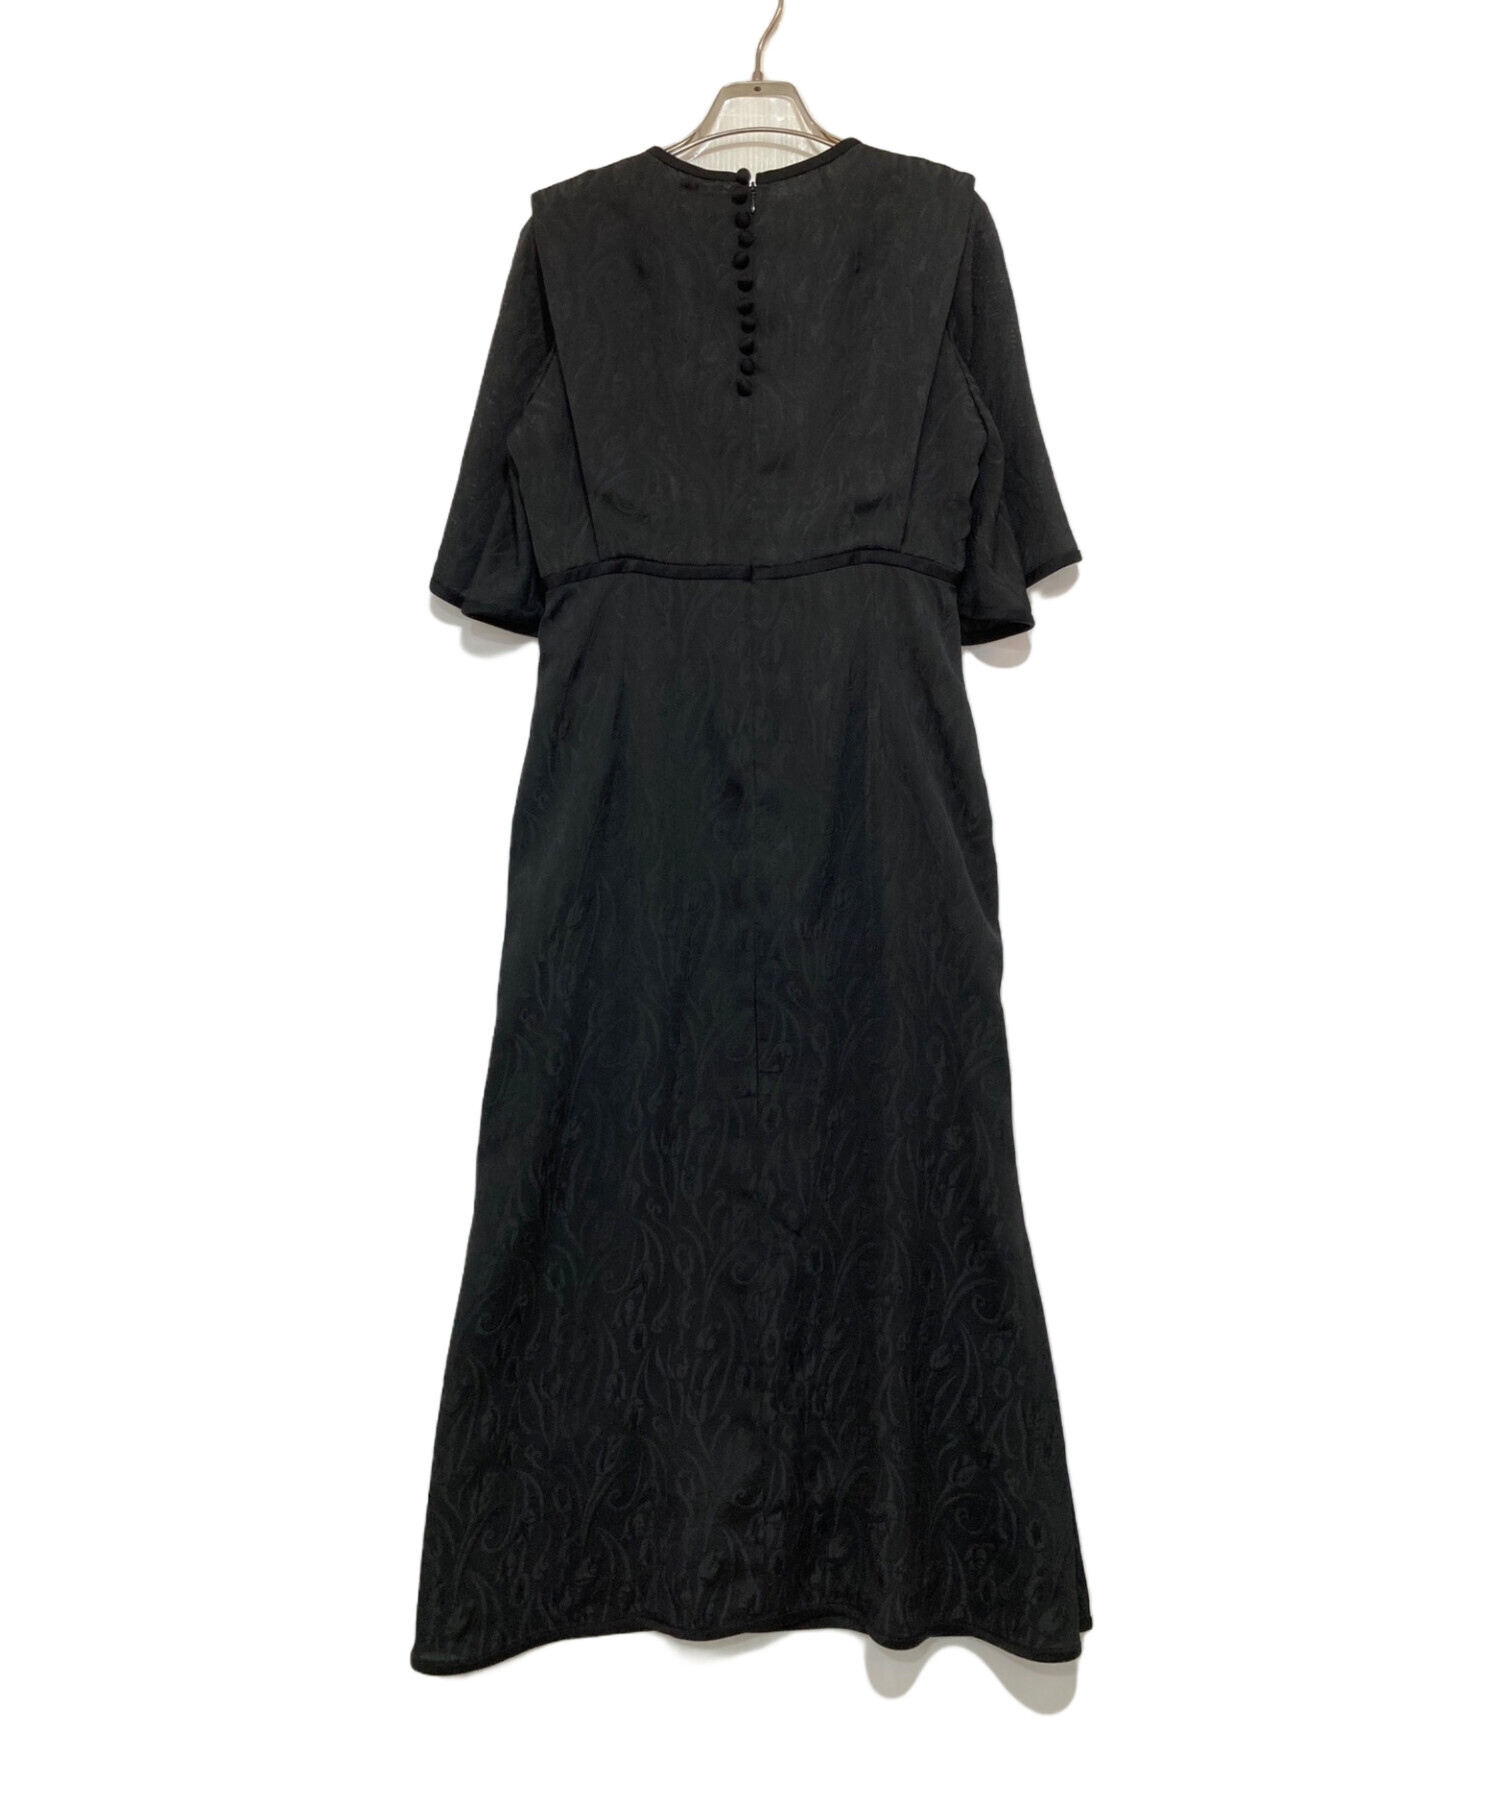 mame kurogouchi (マメクロゴウチ) Tulip Motif Jacquard Dress ブラック サイズ:M